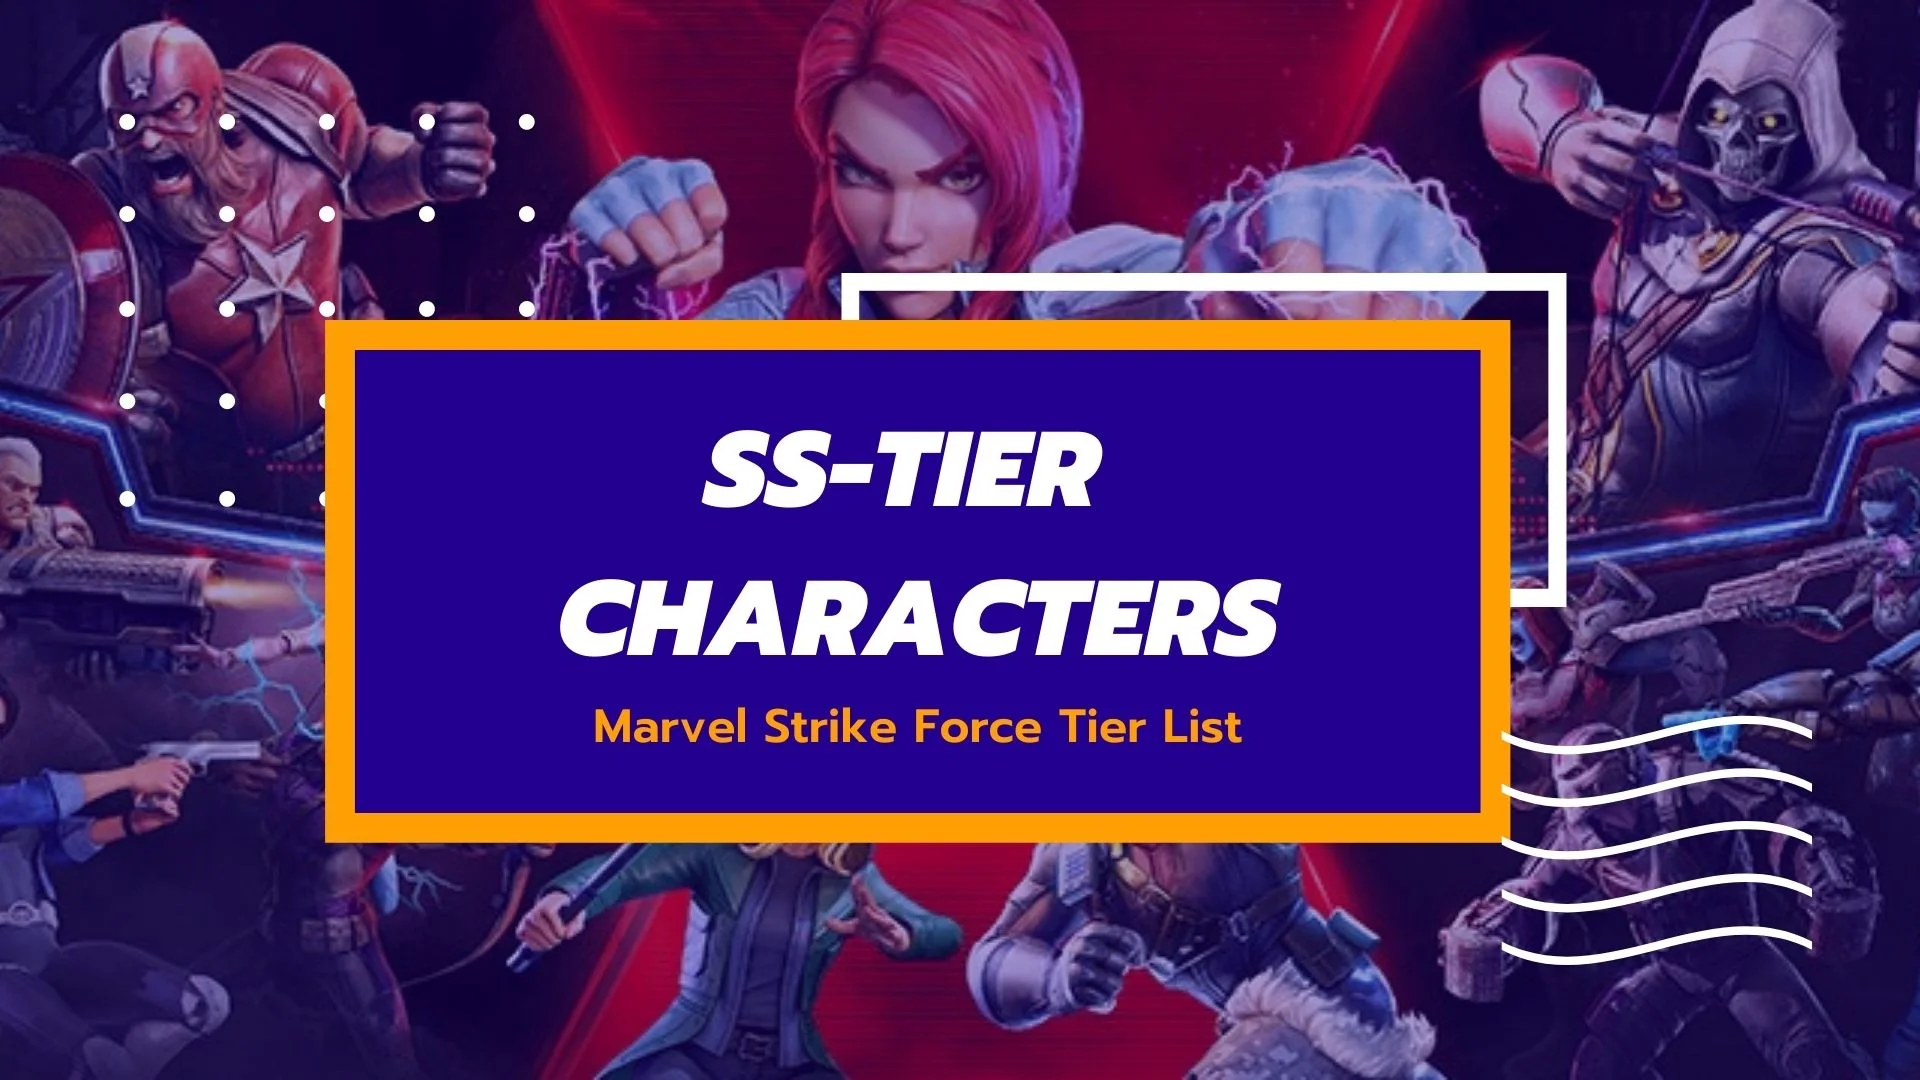 Marvel Strike Force - MARVEL Strike Force wallpaper. Did we miss